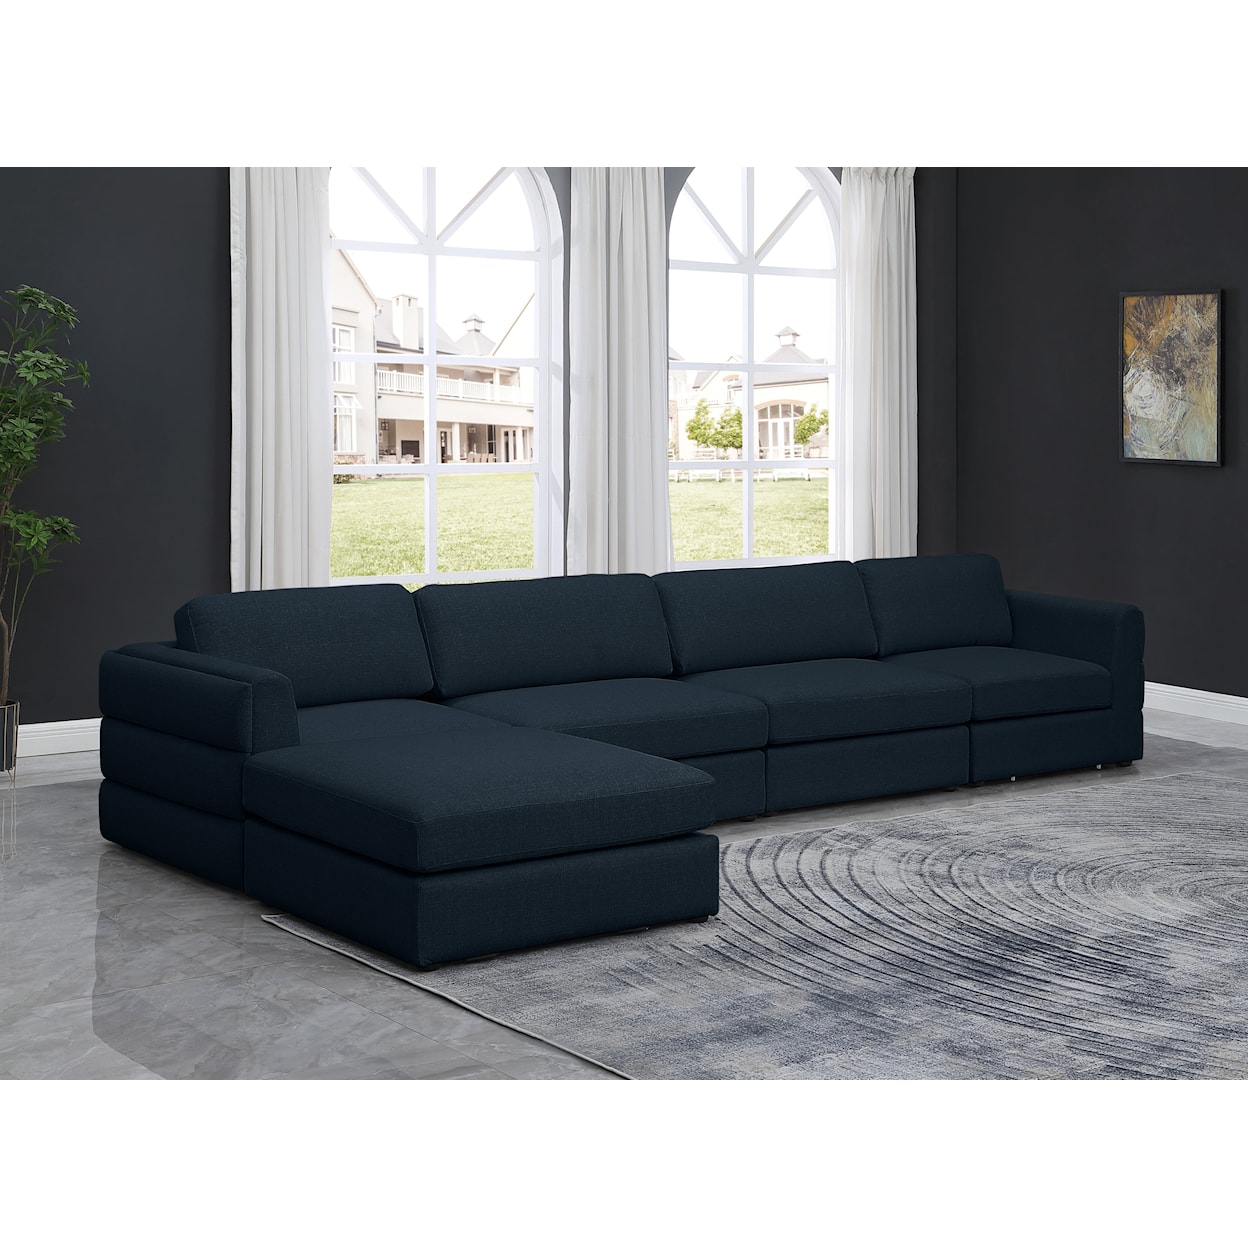 Meridian Furniture Beckham Modular Sectional